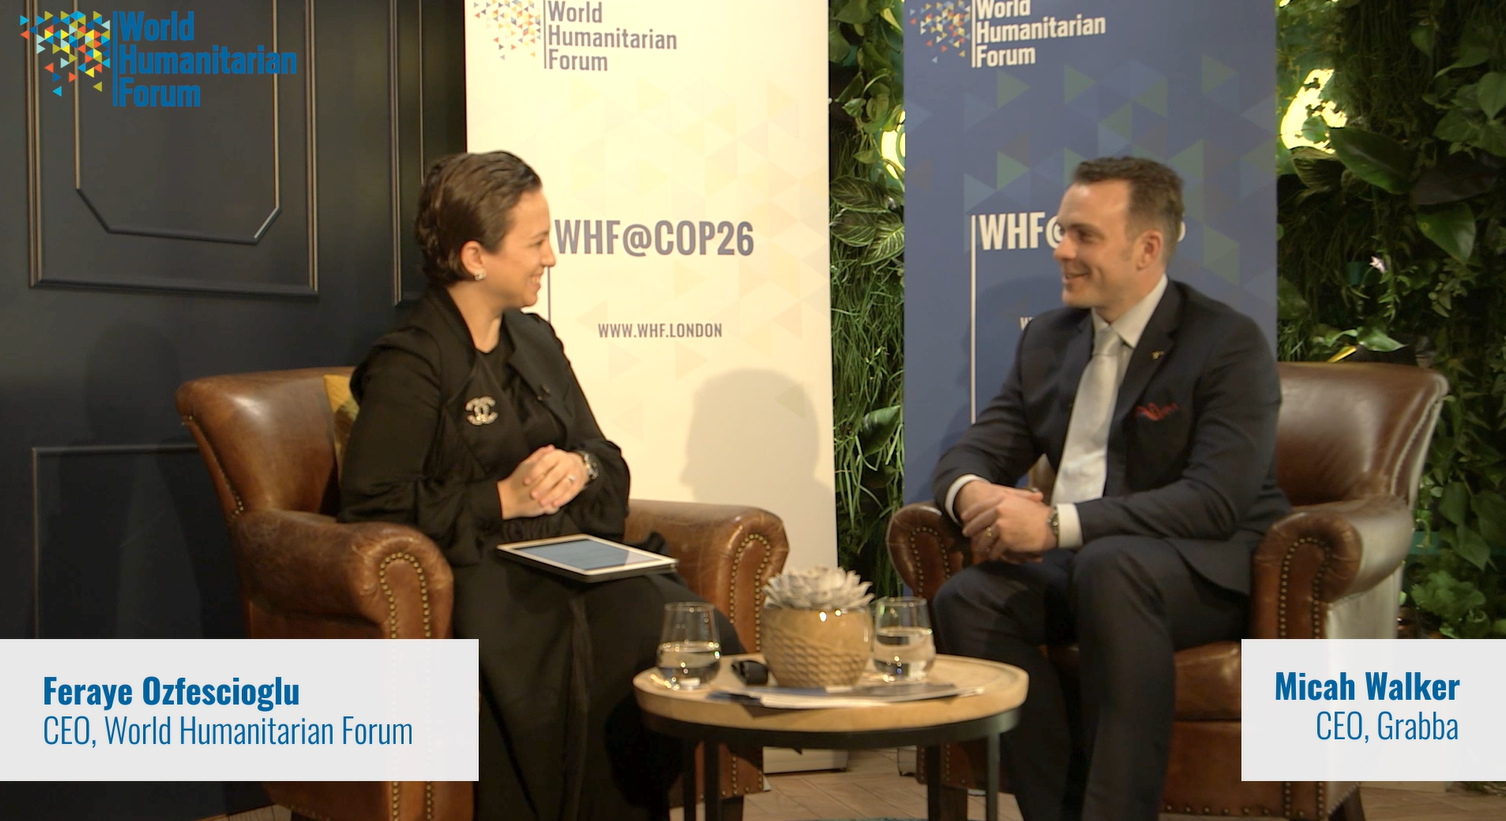 WHFTalks.Live COP26 Special Edition | Feraye Ozfescioglu, CEO, World Humanitarian Forum in conversation with Micah Walker, CEO of Grabba